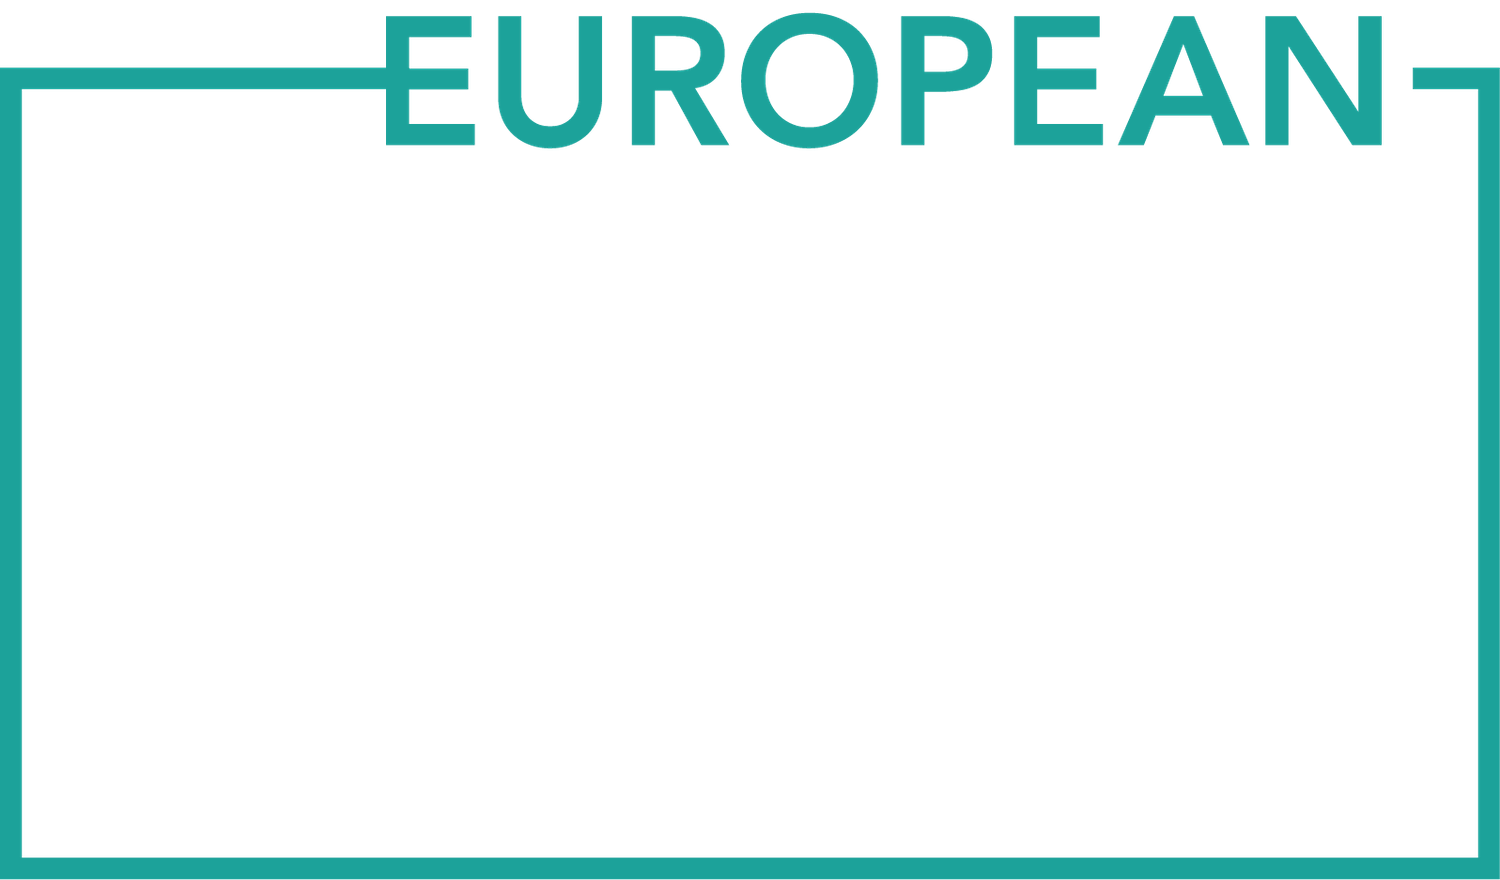 European Agency Awards logo